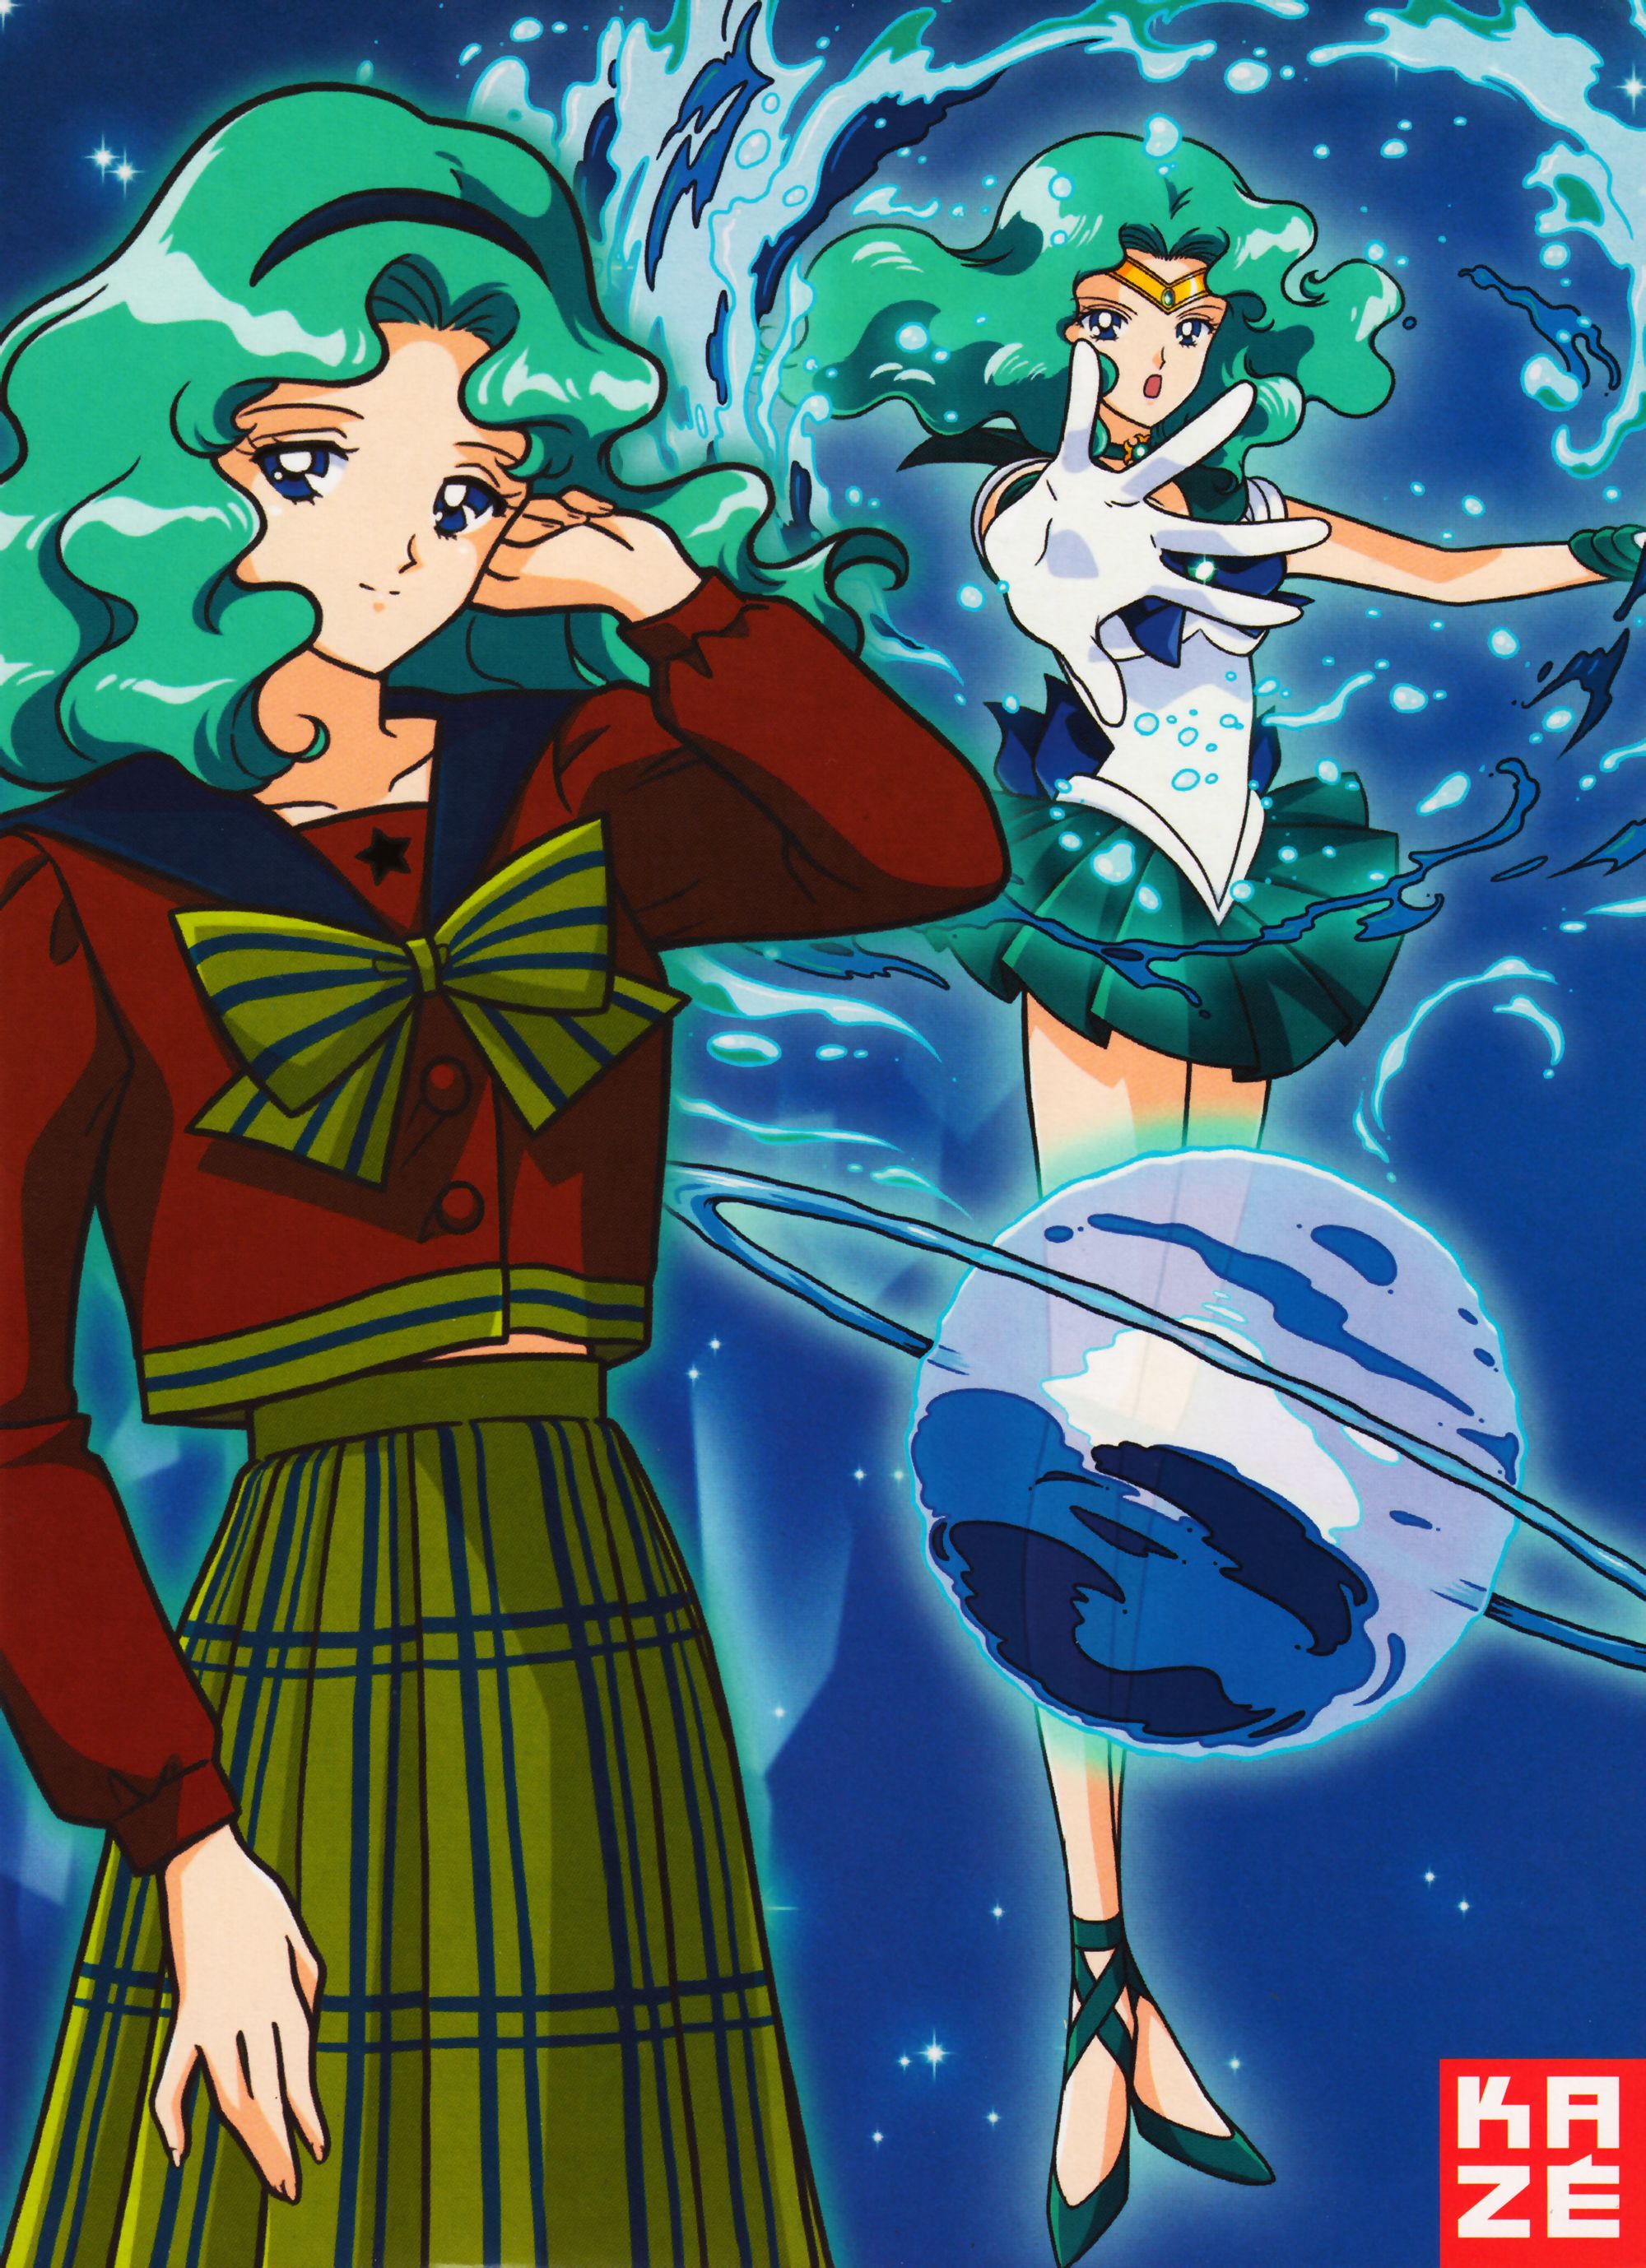 Bishoujo Senshi Sailor Moon Series Sailor Neptune Character Michiru Kaioh Character wallpaperx2756